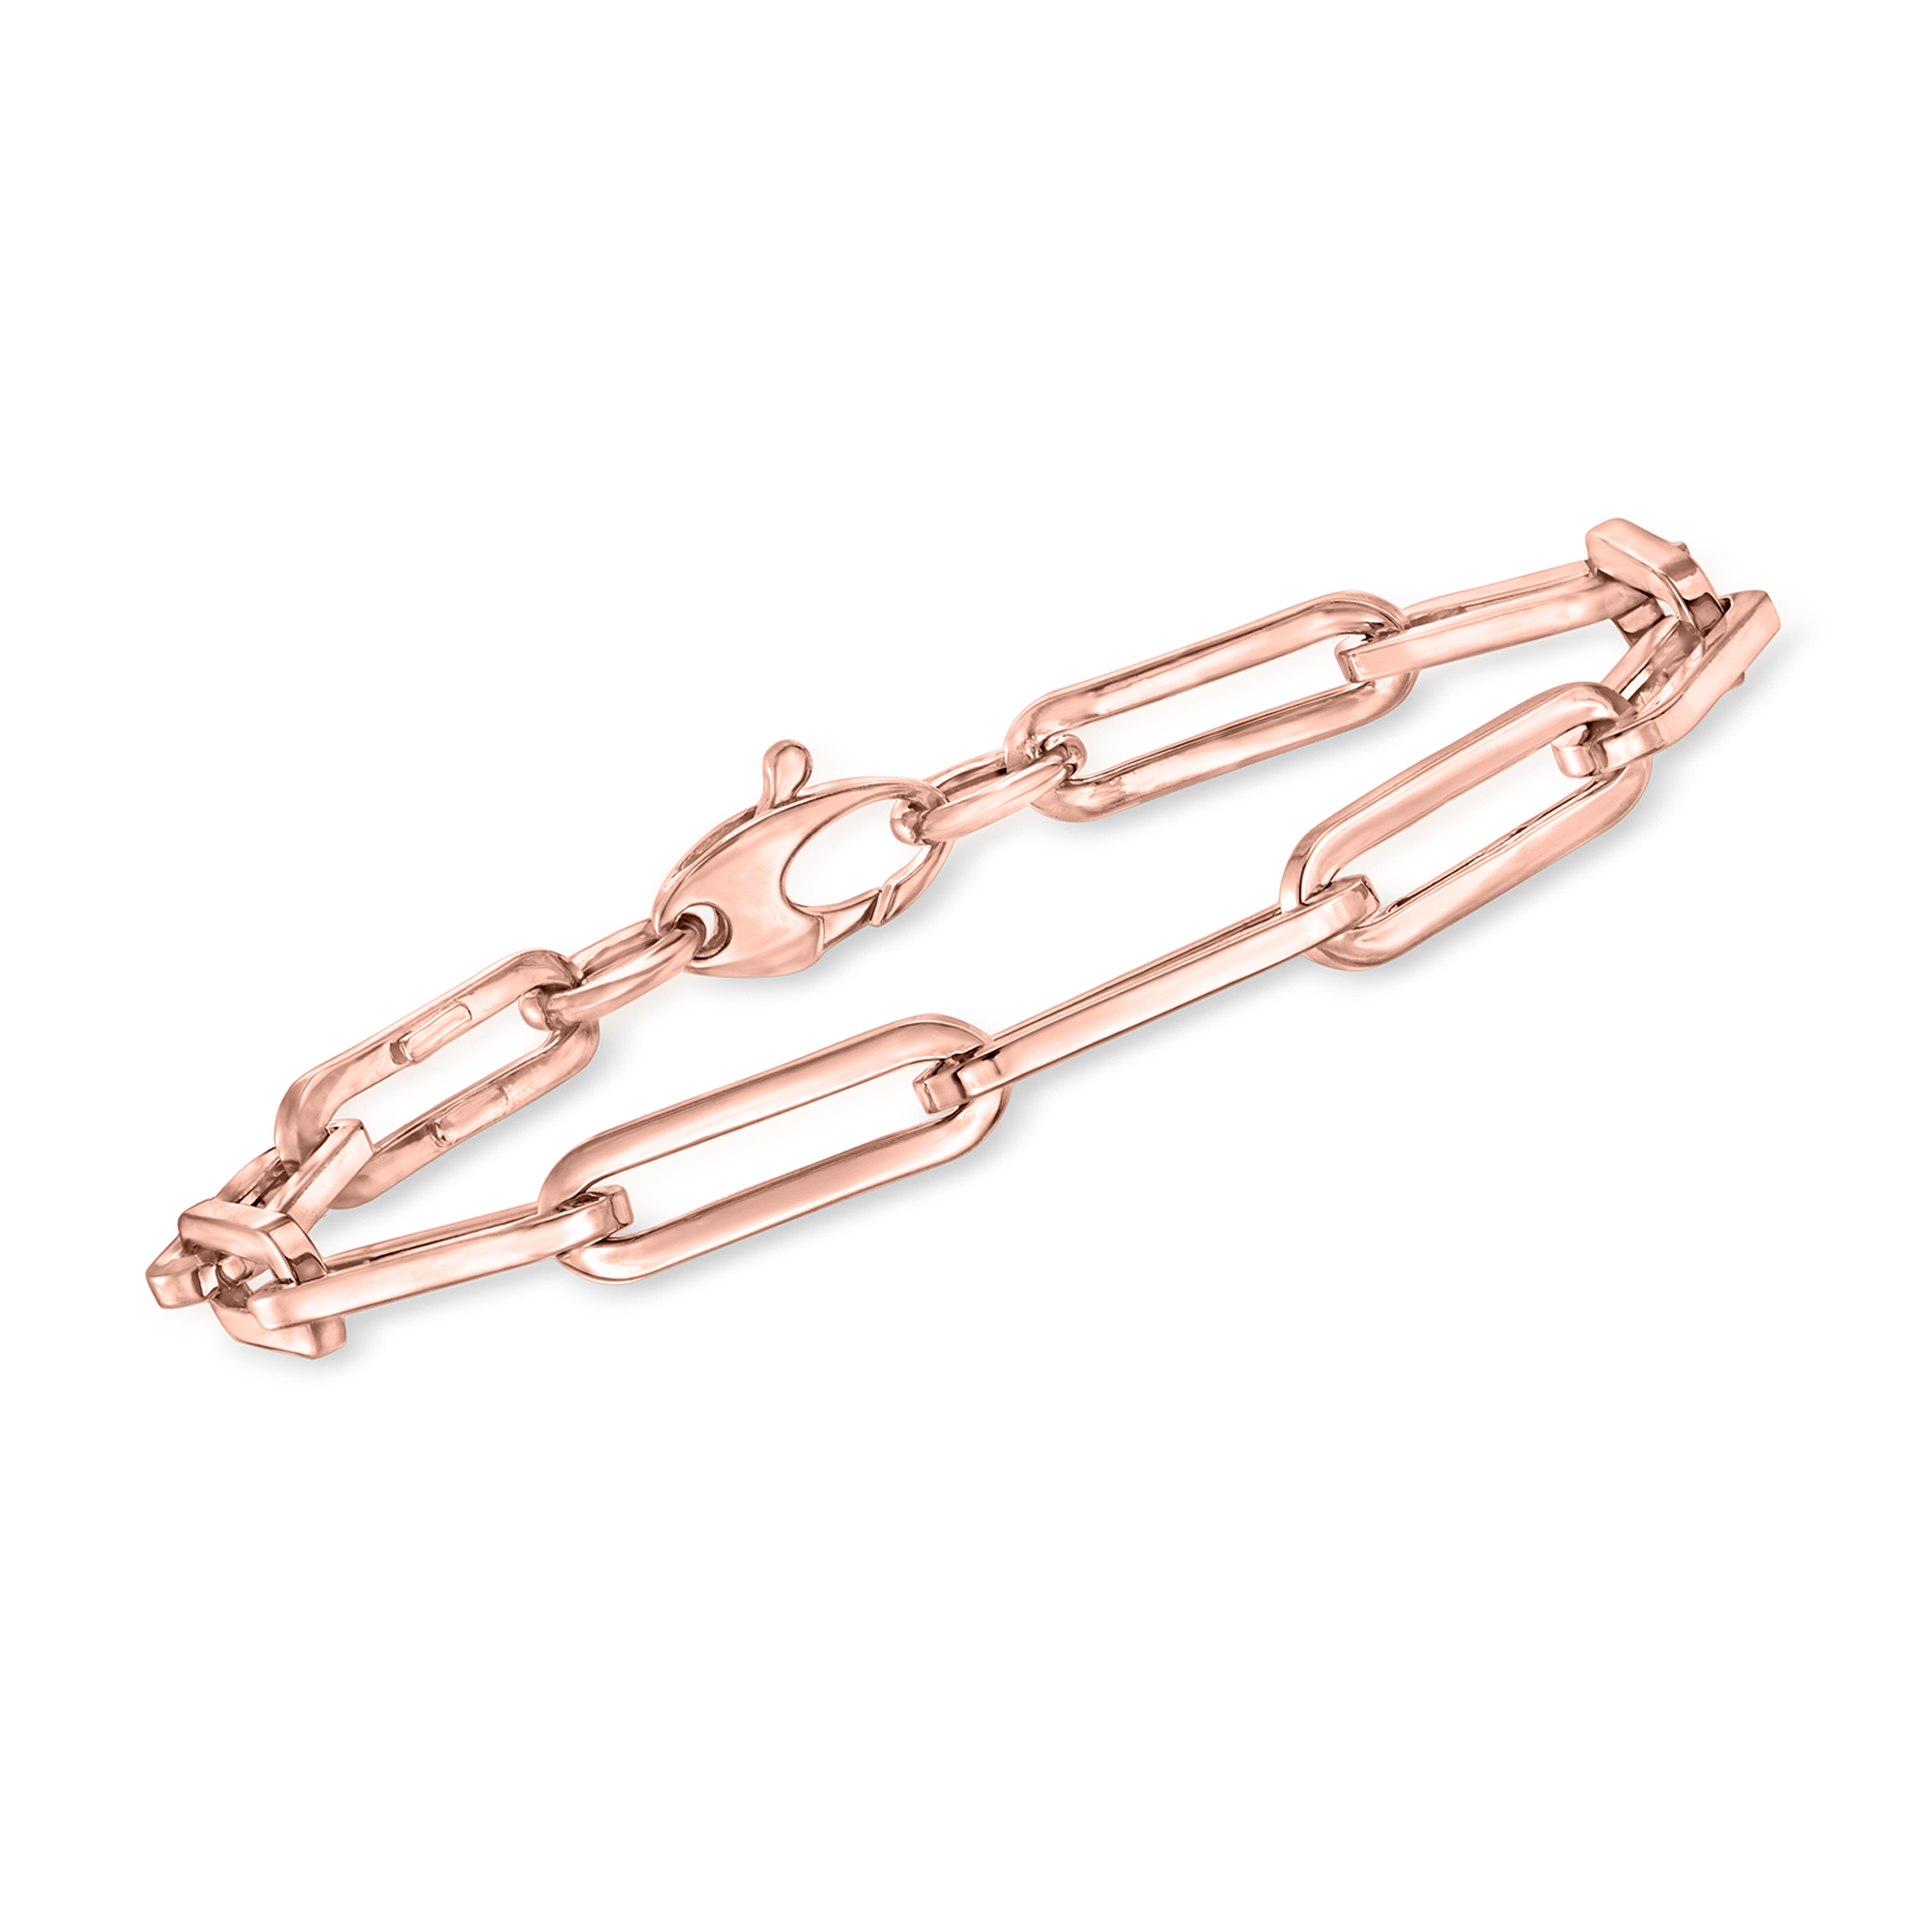 Italian 14kt Rose Gold Paper Clip Link Bracelet. 7.5